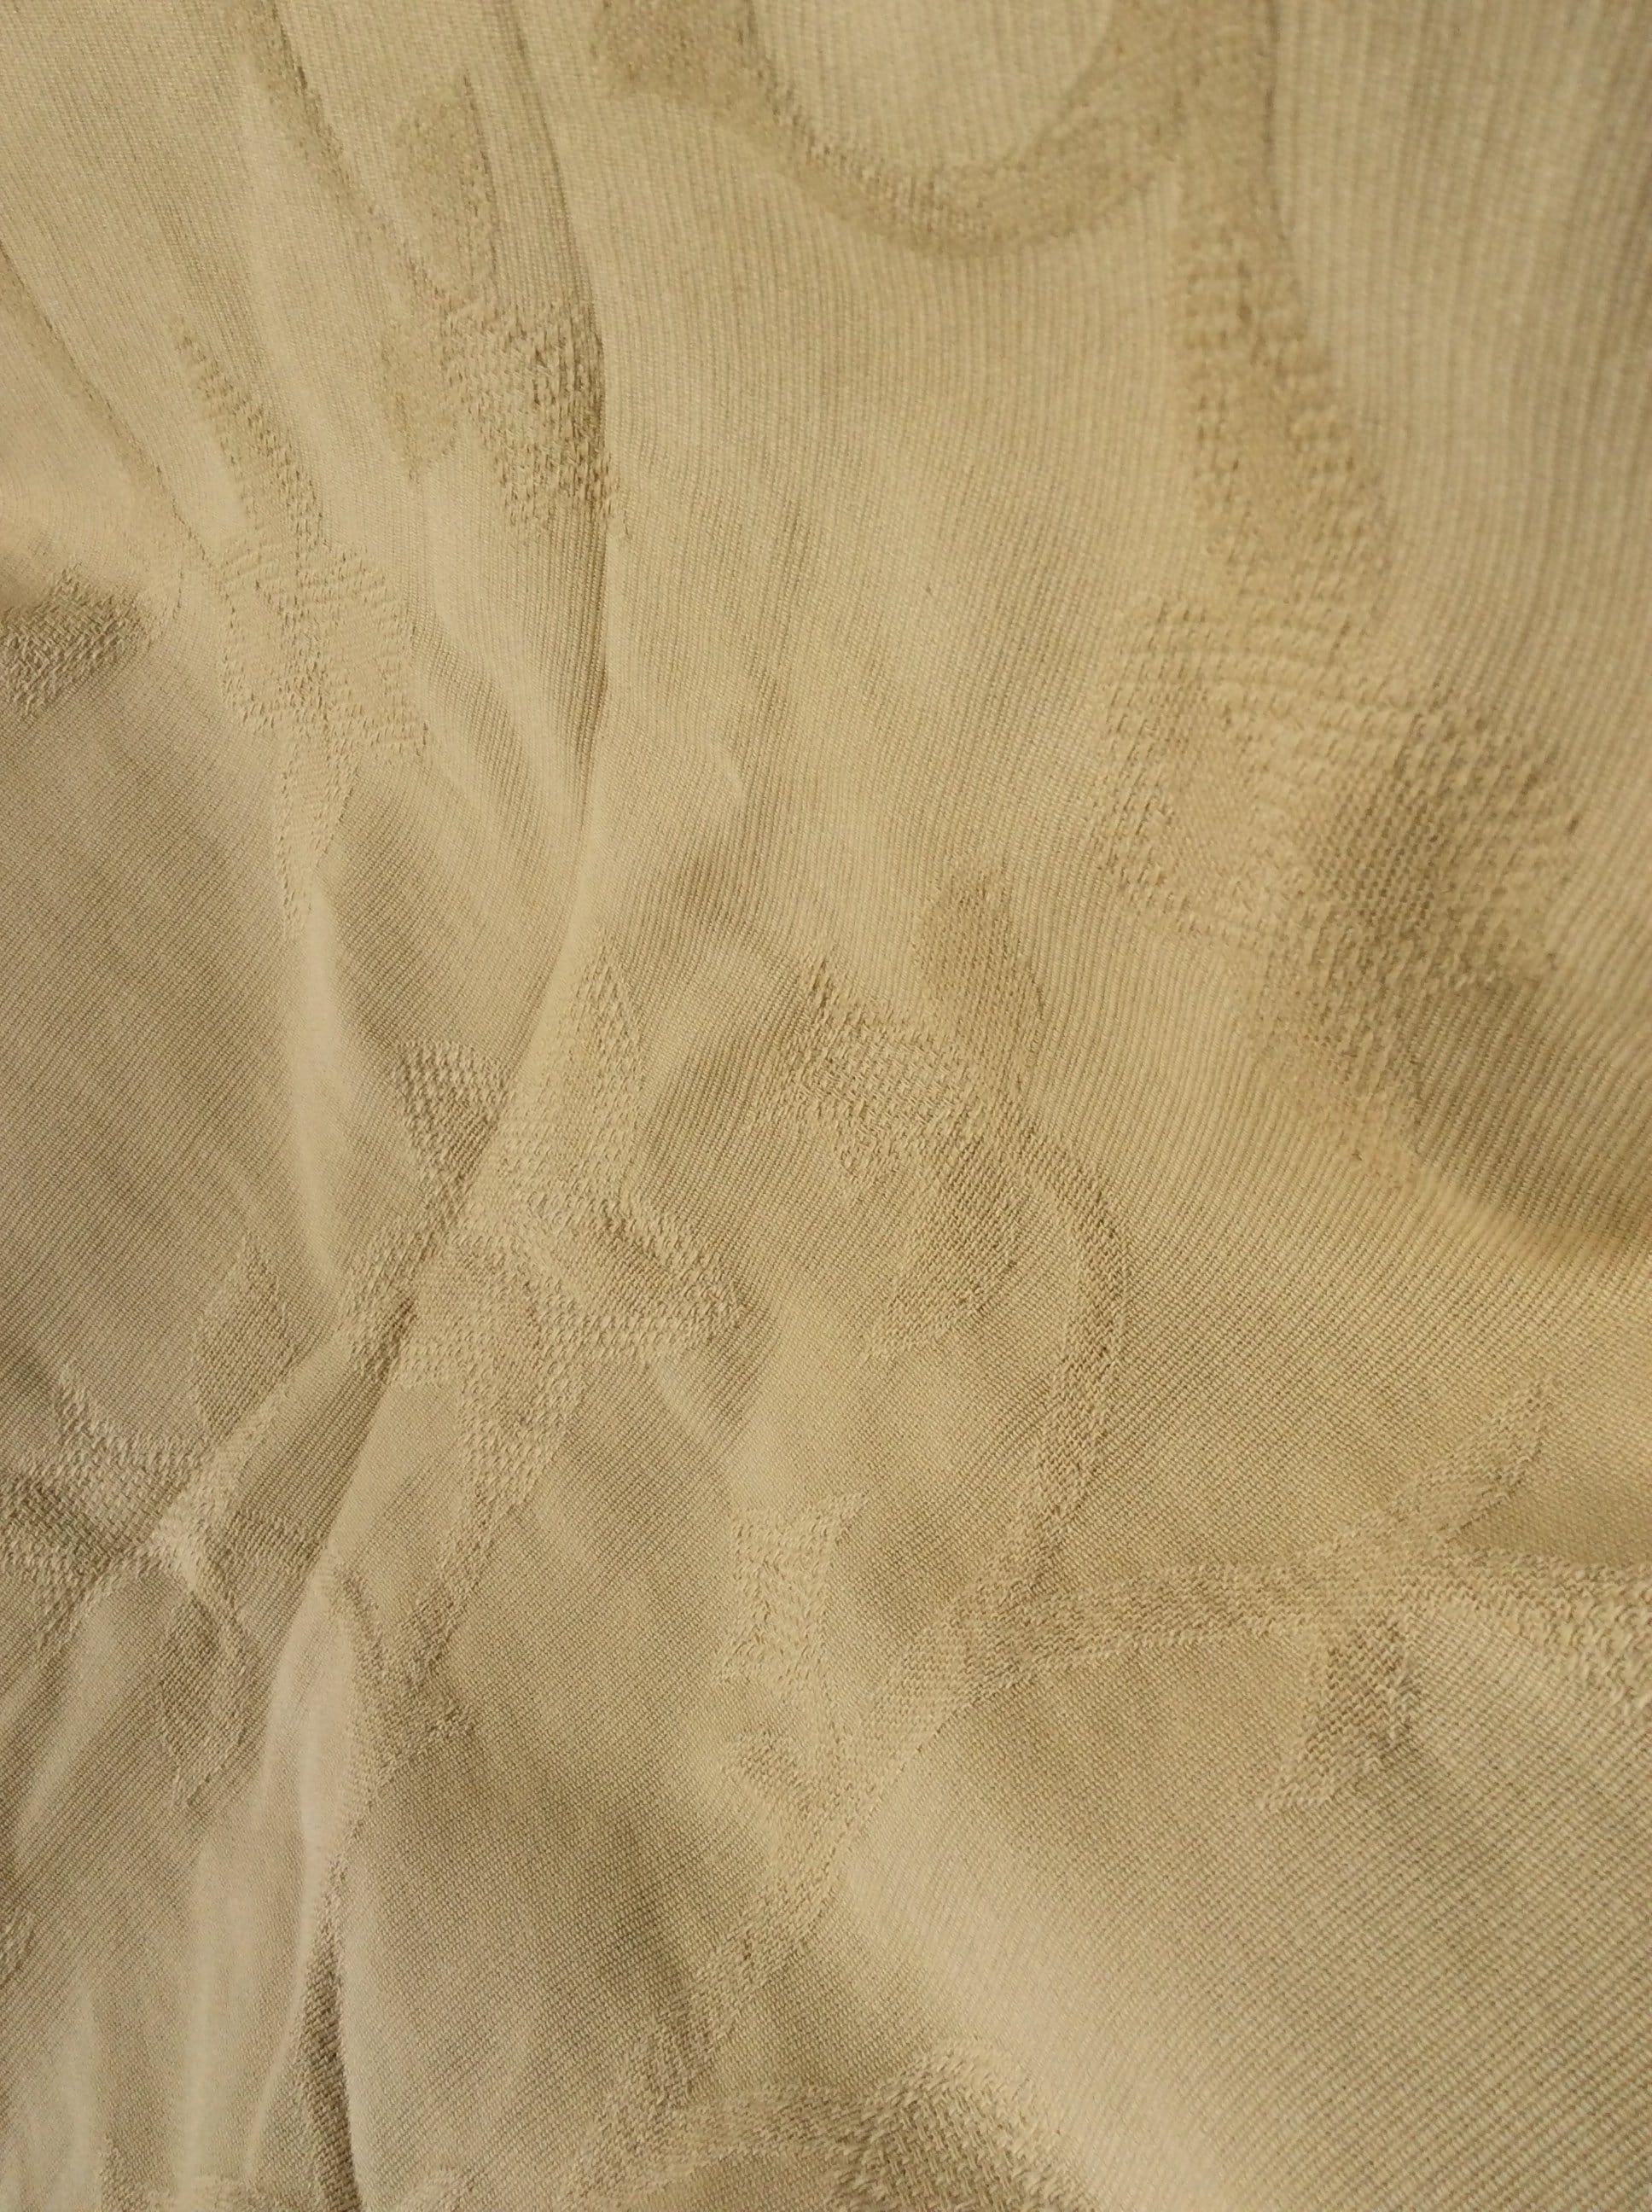 Mustard Gold Fabric Yardage